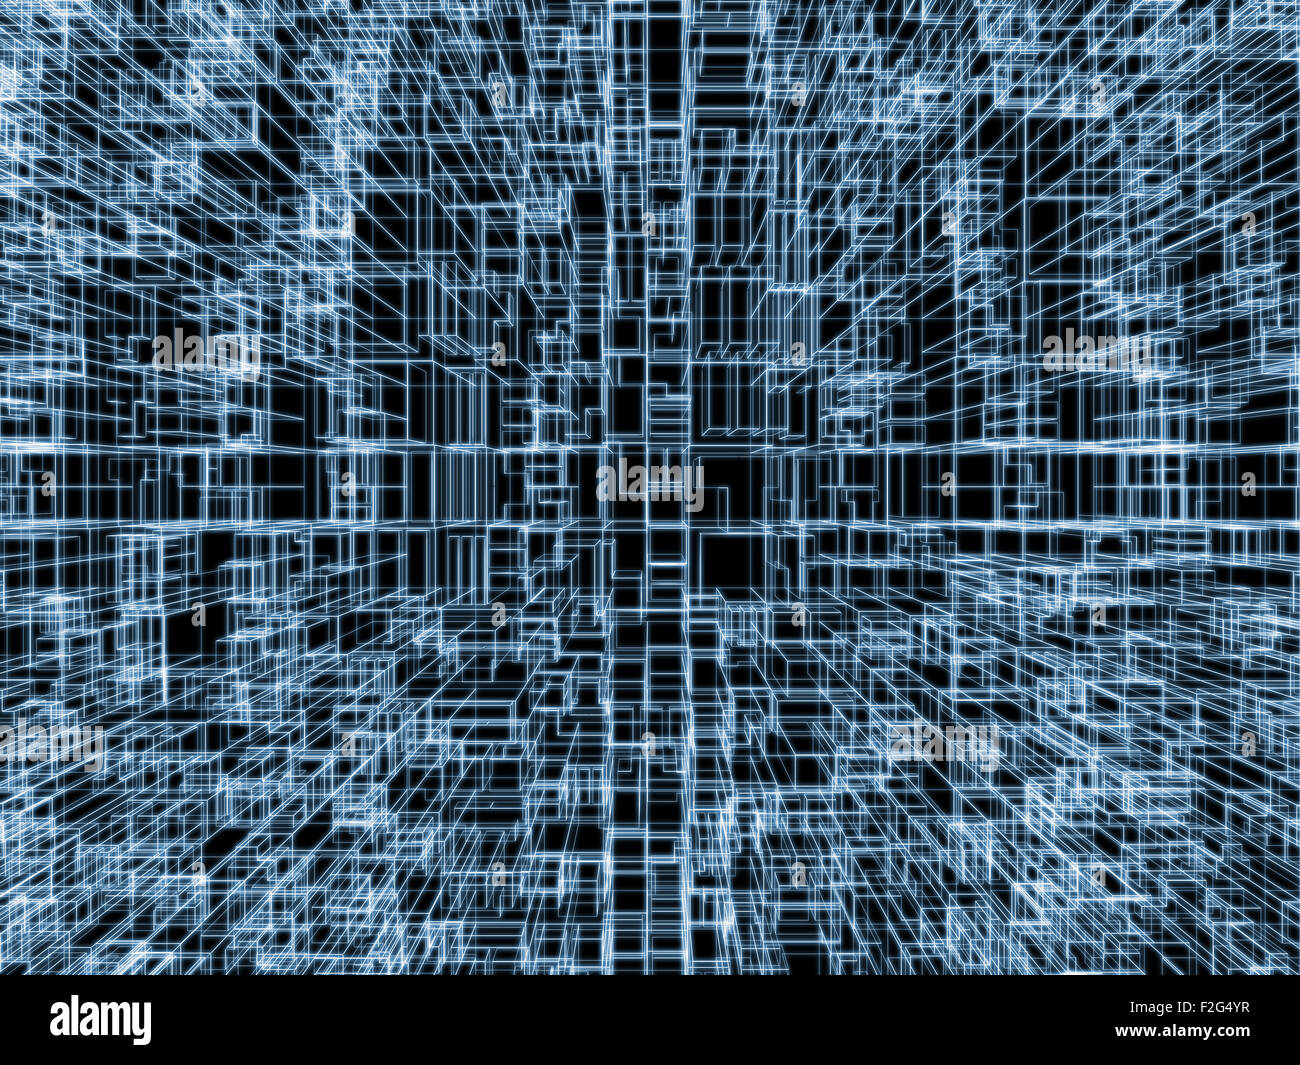 Digitalen Hintergrund mit kubischen 3D-Struktur, leuchtende blaue Kabel Rahmenlinien auf schwarzem Hintergrund Stockfoto